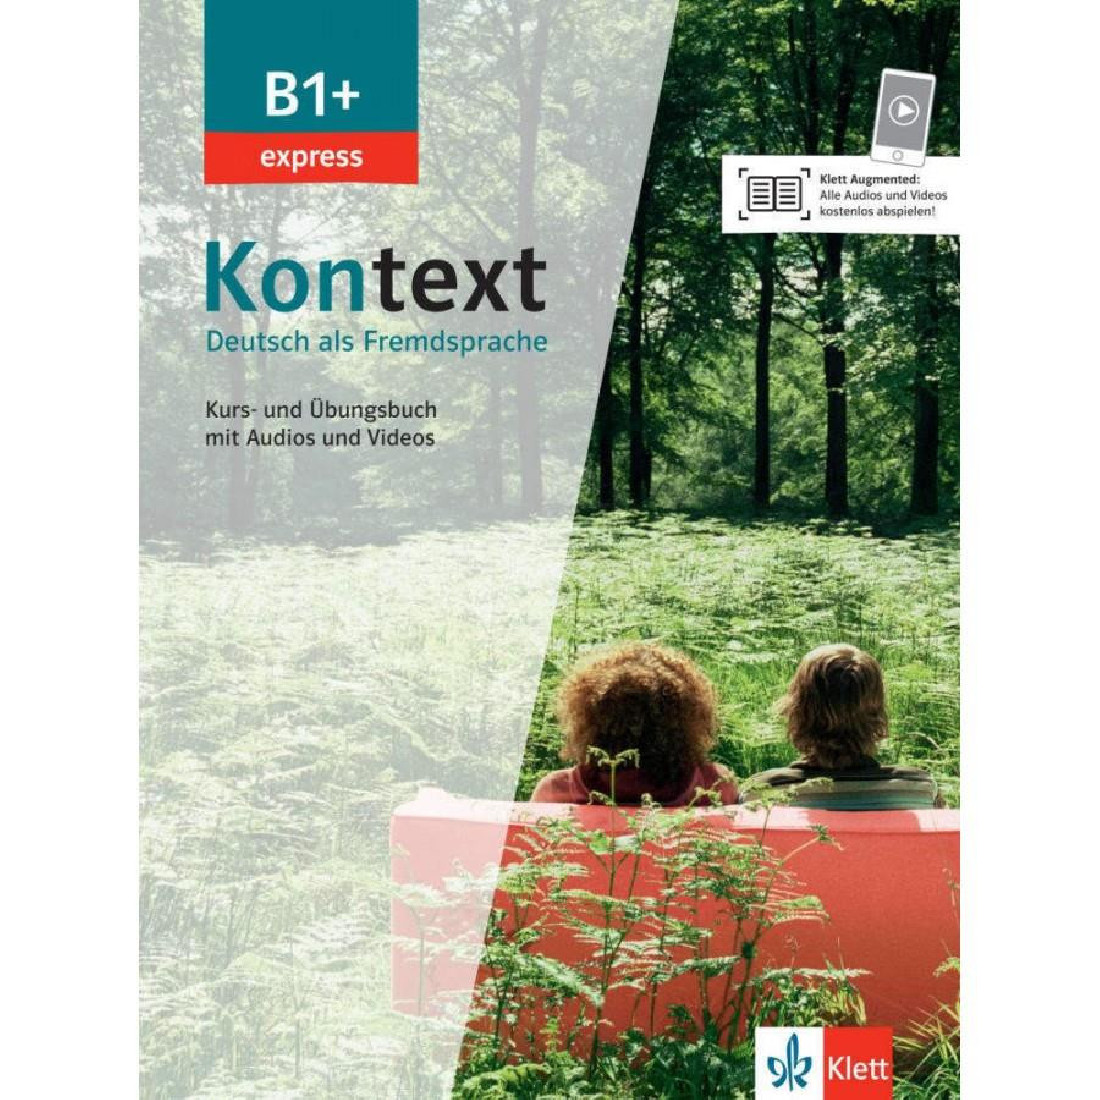 KONTEXT EXPRESS B1+ KURS - UND UBUNGSBUCH